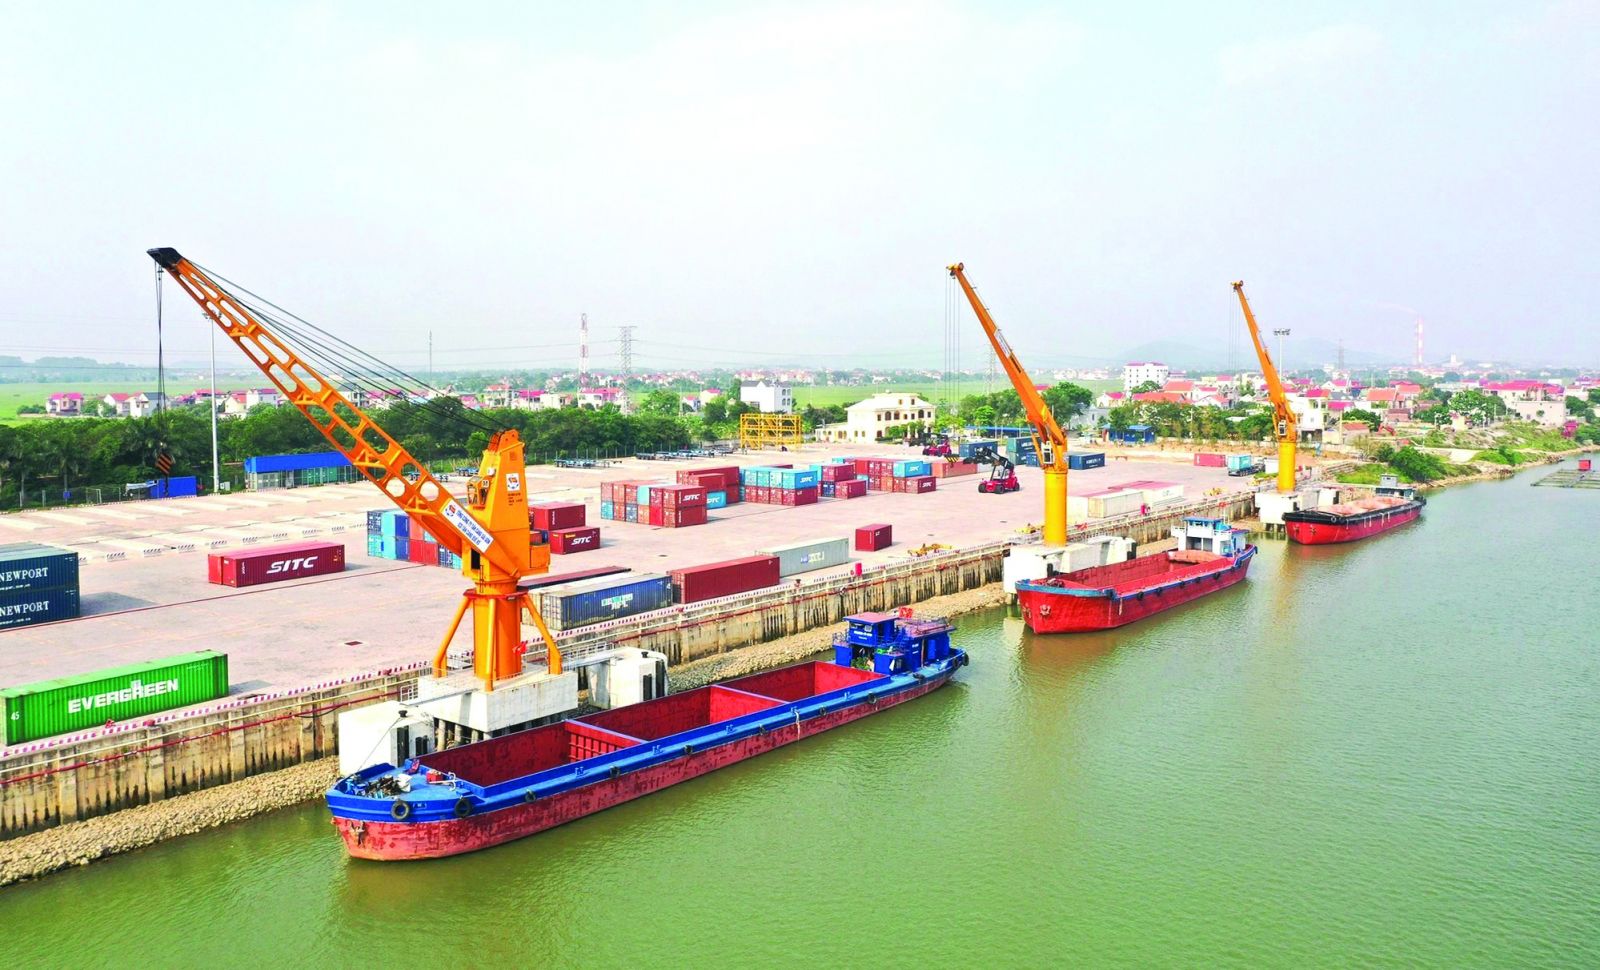  Cụm cảng Tân Cảng - Quế Võ, Bắc Ninh phục vụ nhu cầu vận tải đường thủy cho các doanh nghiệp xuất nhập khẩu khu vực Bắc Ninh, Bắc Giang, Thái Nguyên. Ảnh: G.T